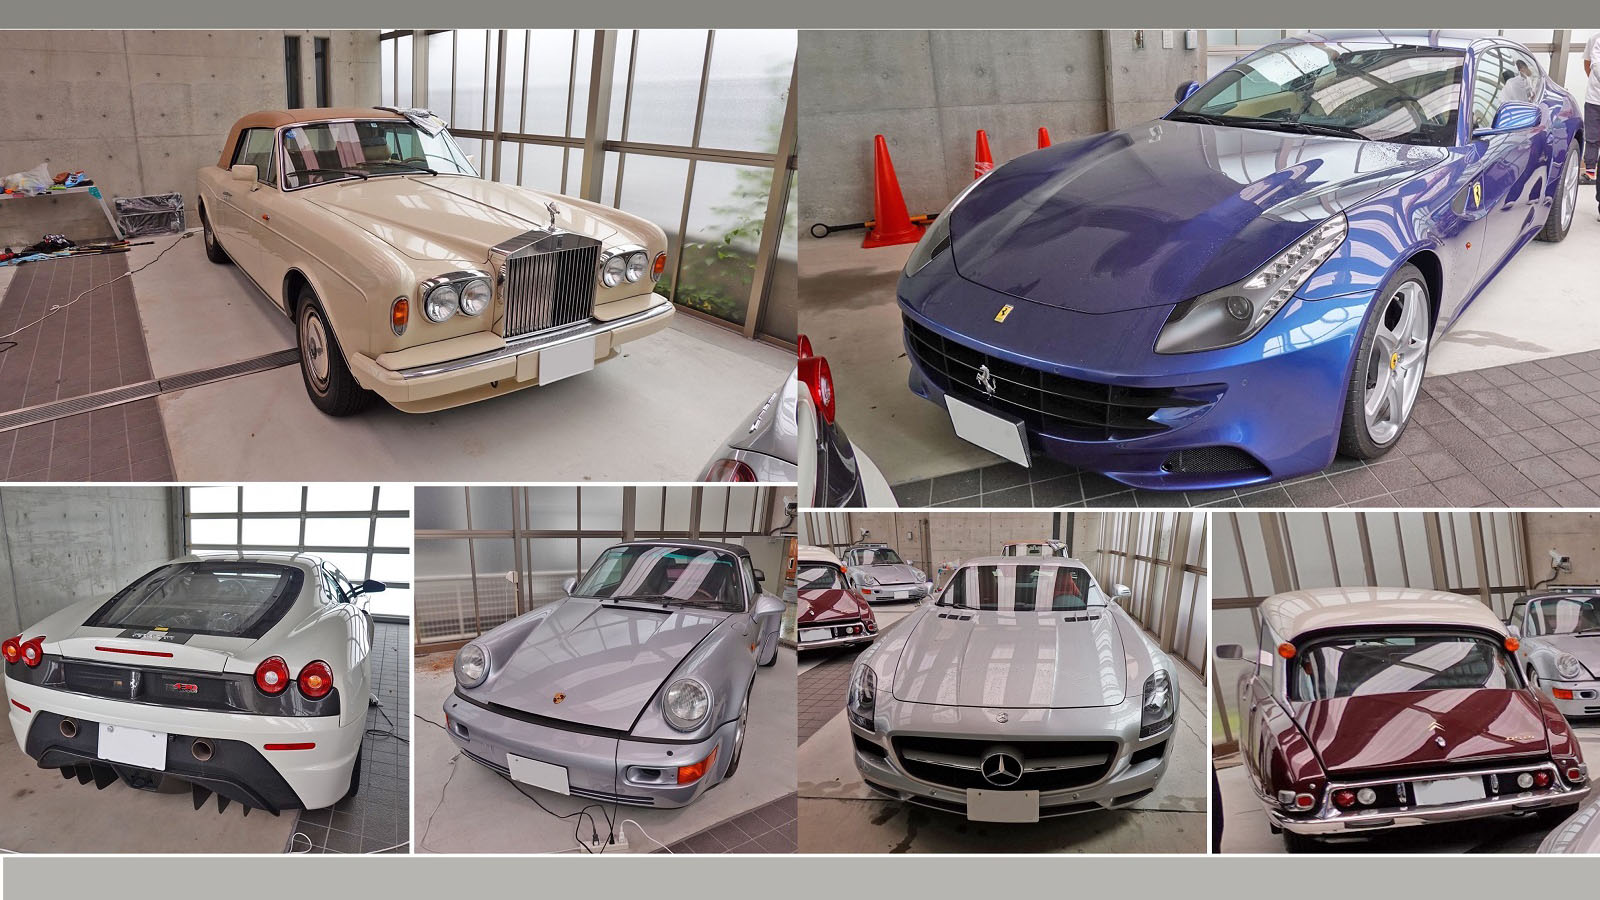 大型高級車12台を格納できる高級ガレージが完成しました 愛知県の外構ショップ Wise Gallery ワイズギャラリー エクステリア日記